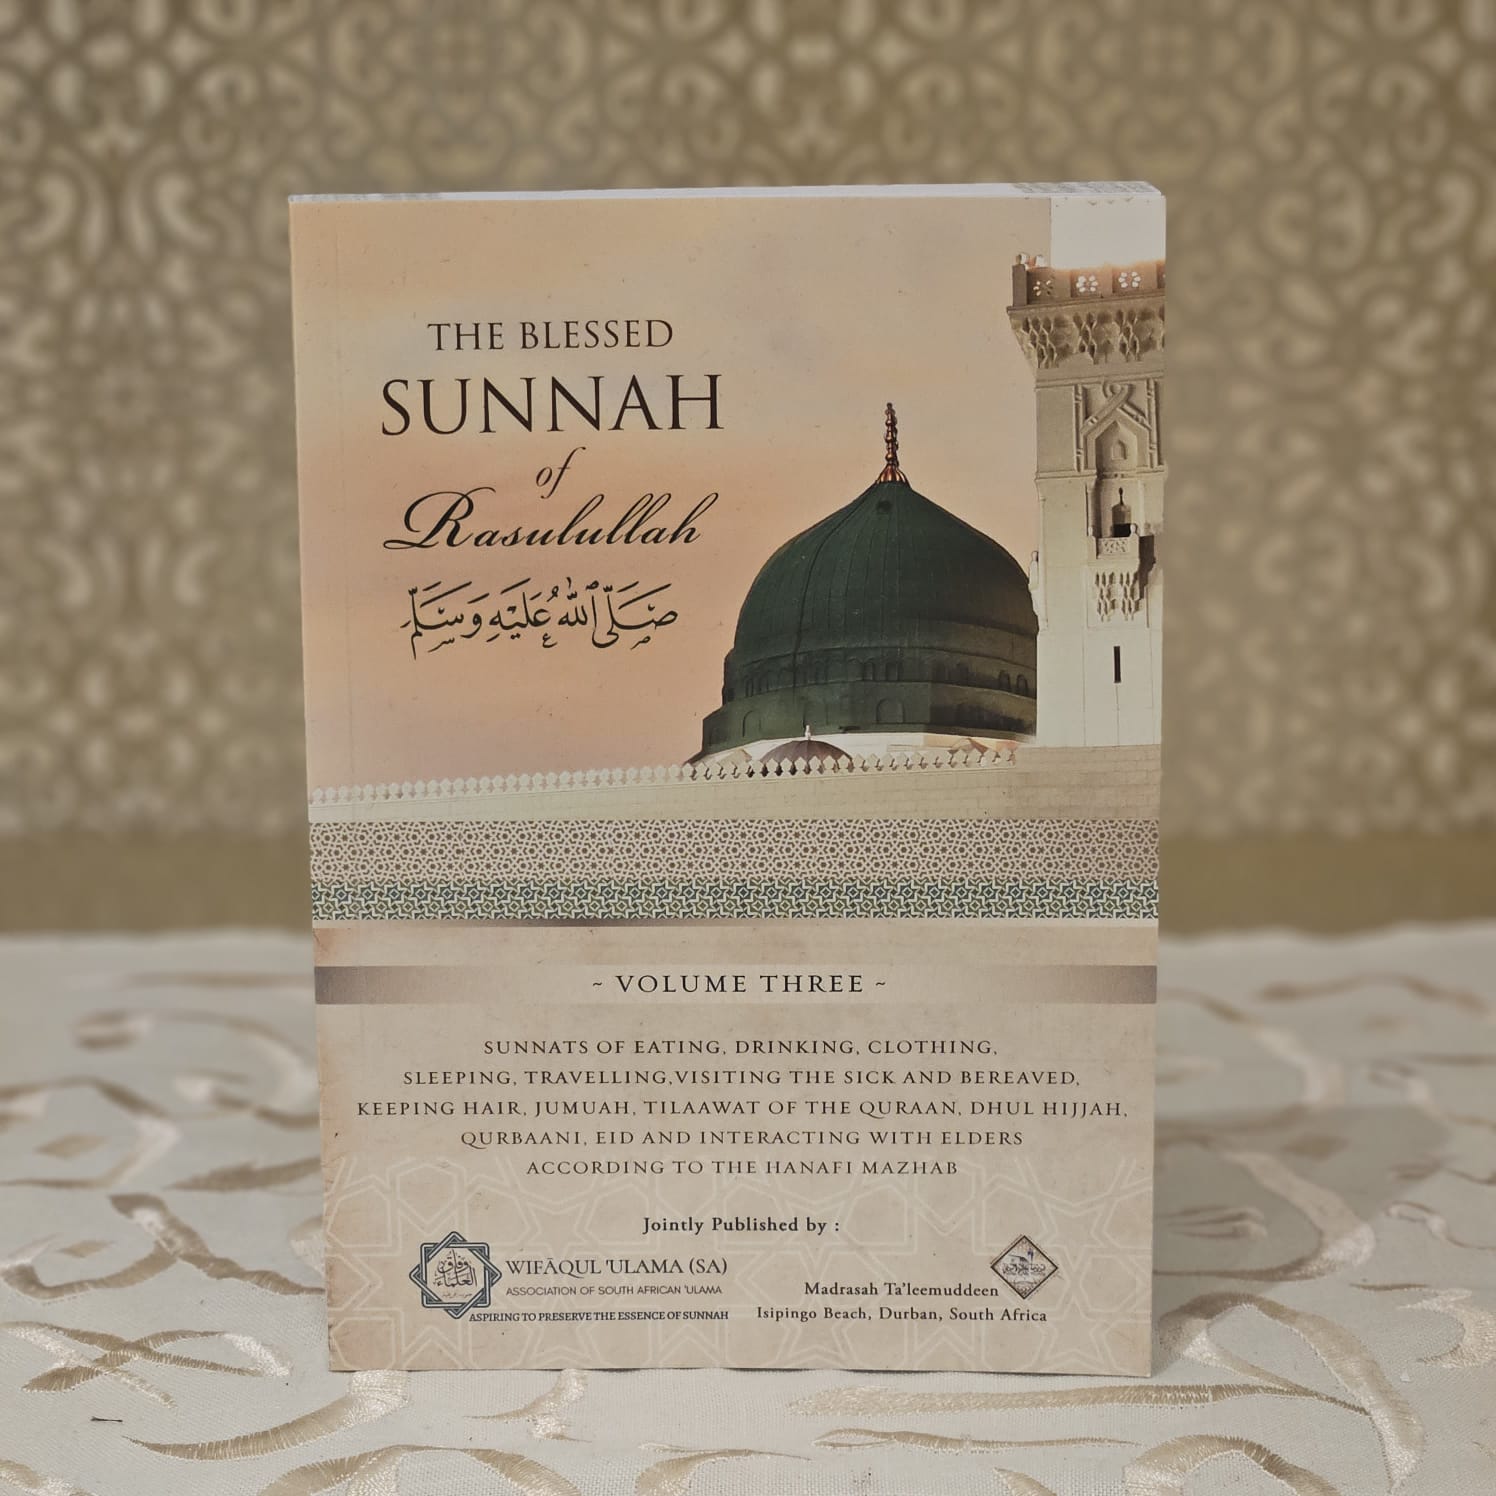 Die geseënde Sunnah van Rasulullah (ﷺ) 3-volumes stel 